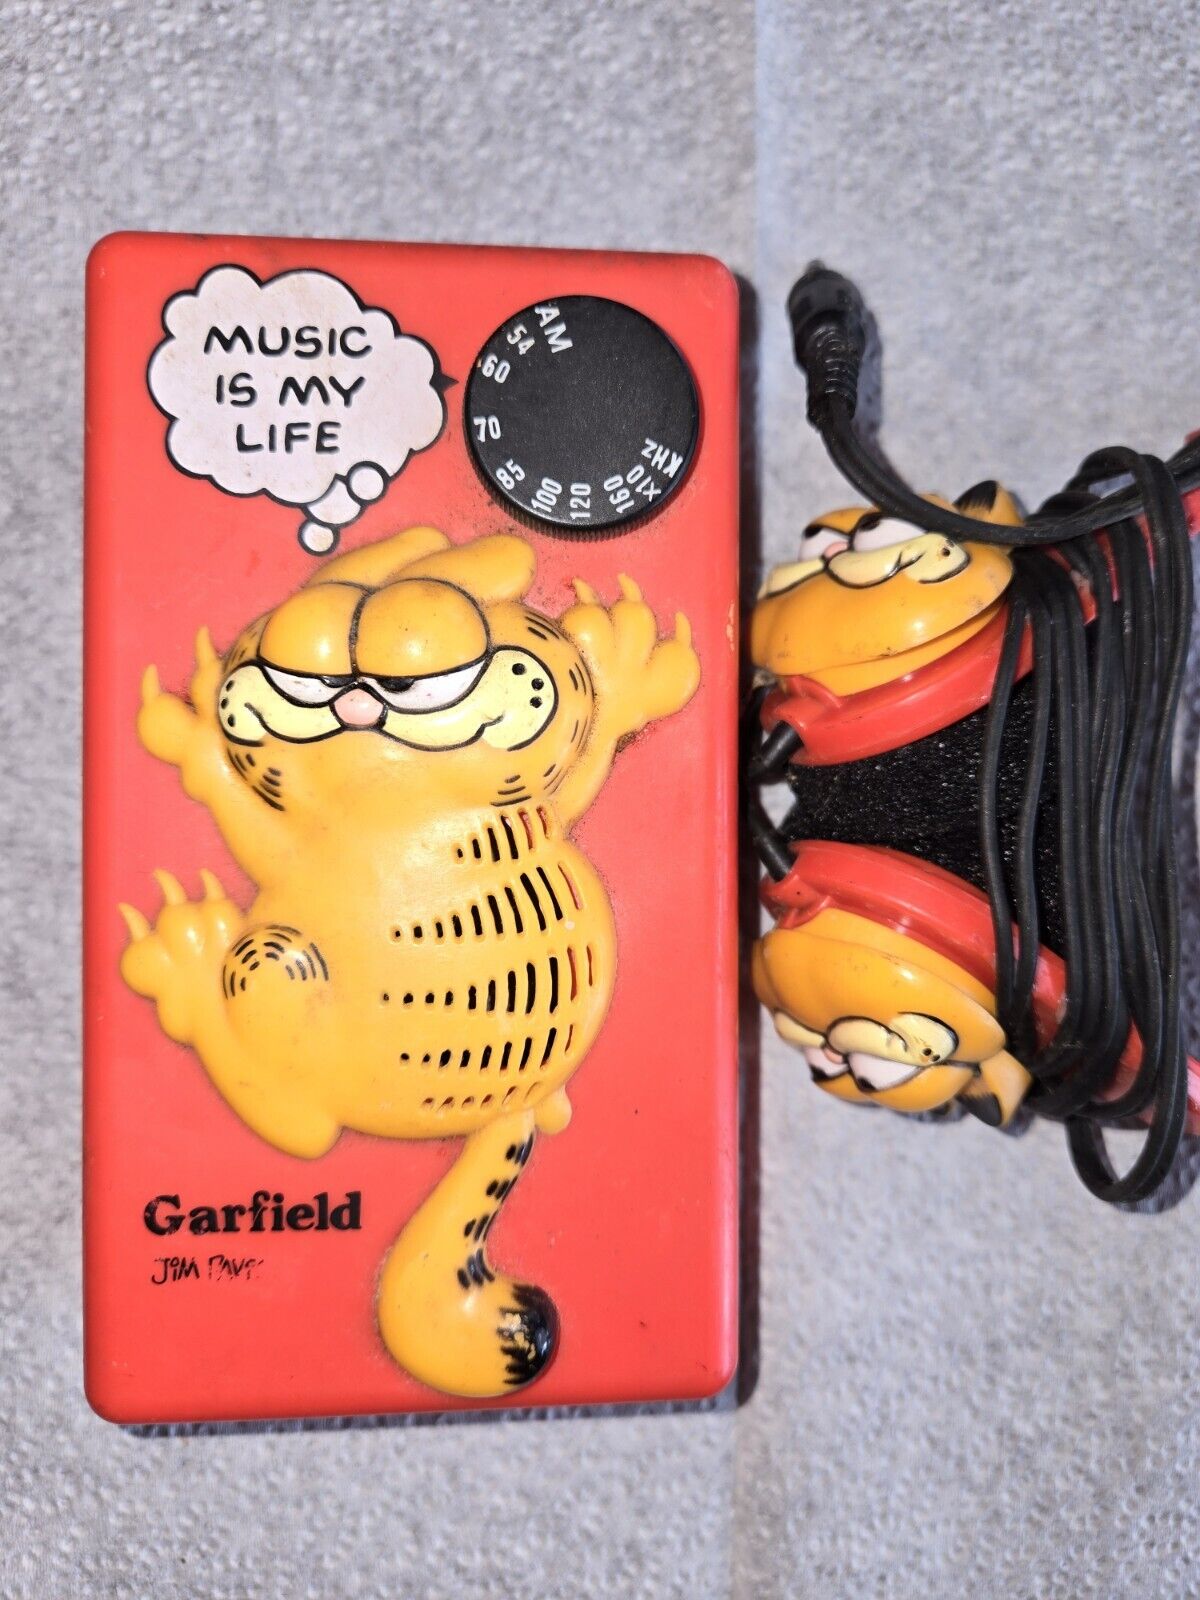 Vintage 1980s (Actually 1978) Garfield Walkman AM Radio